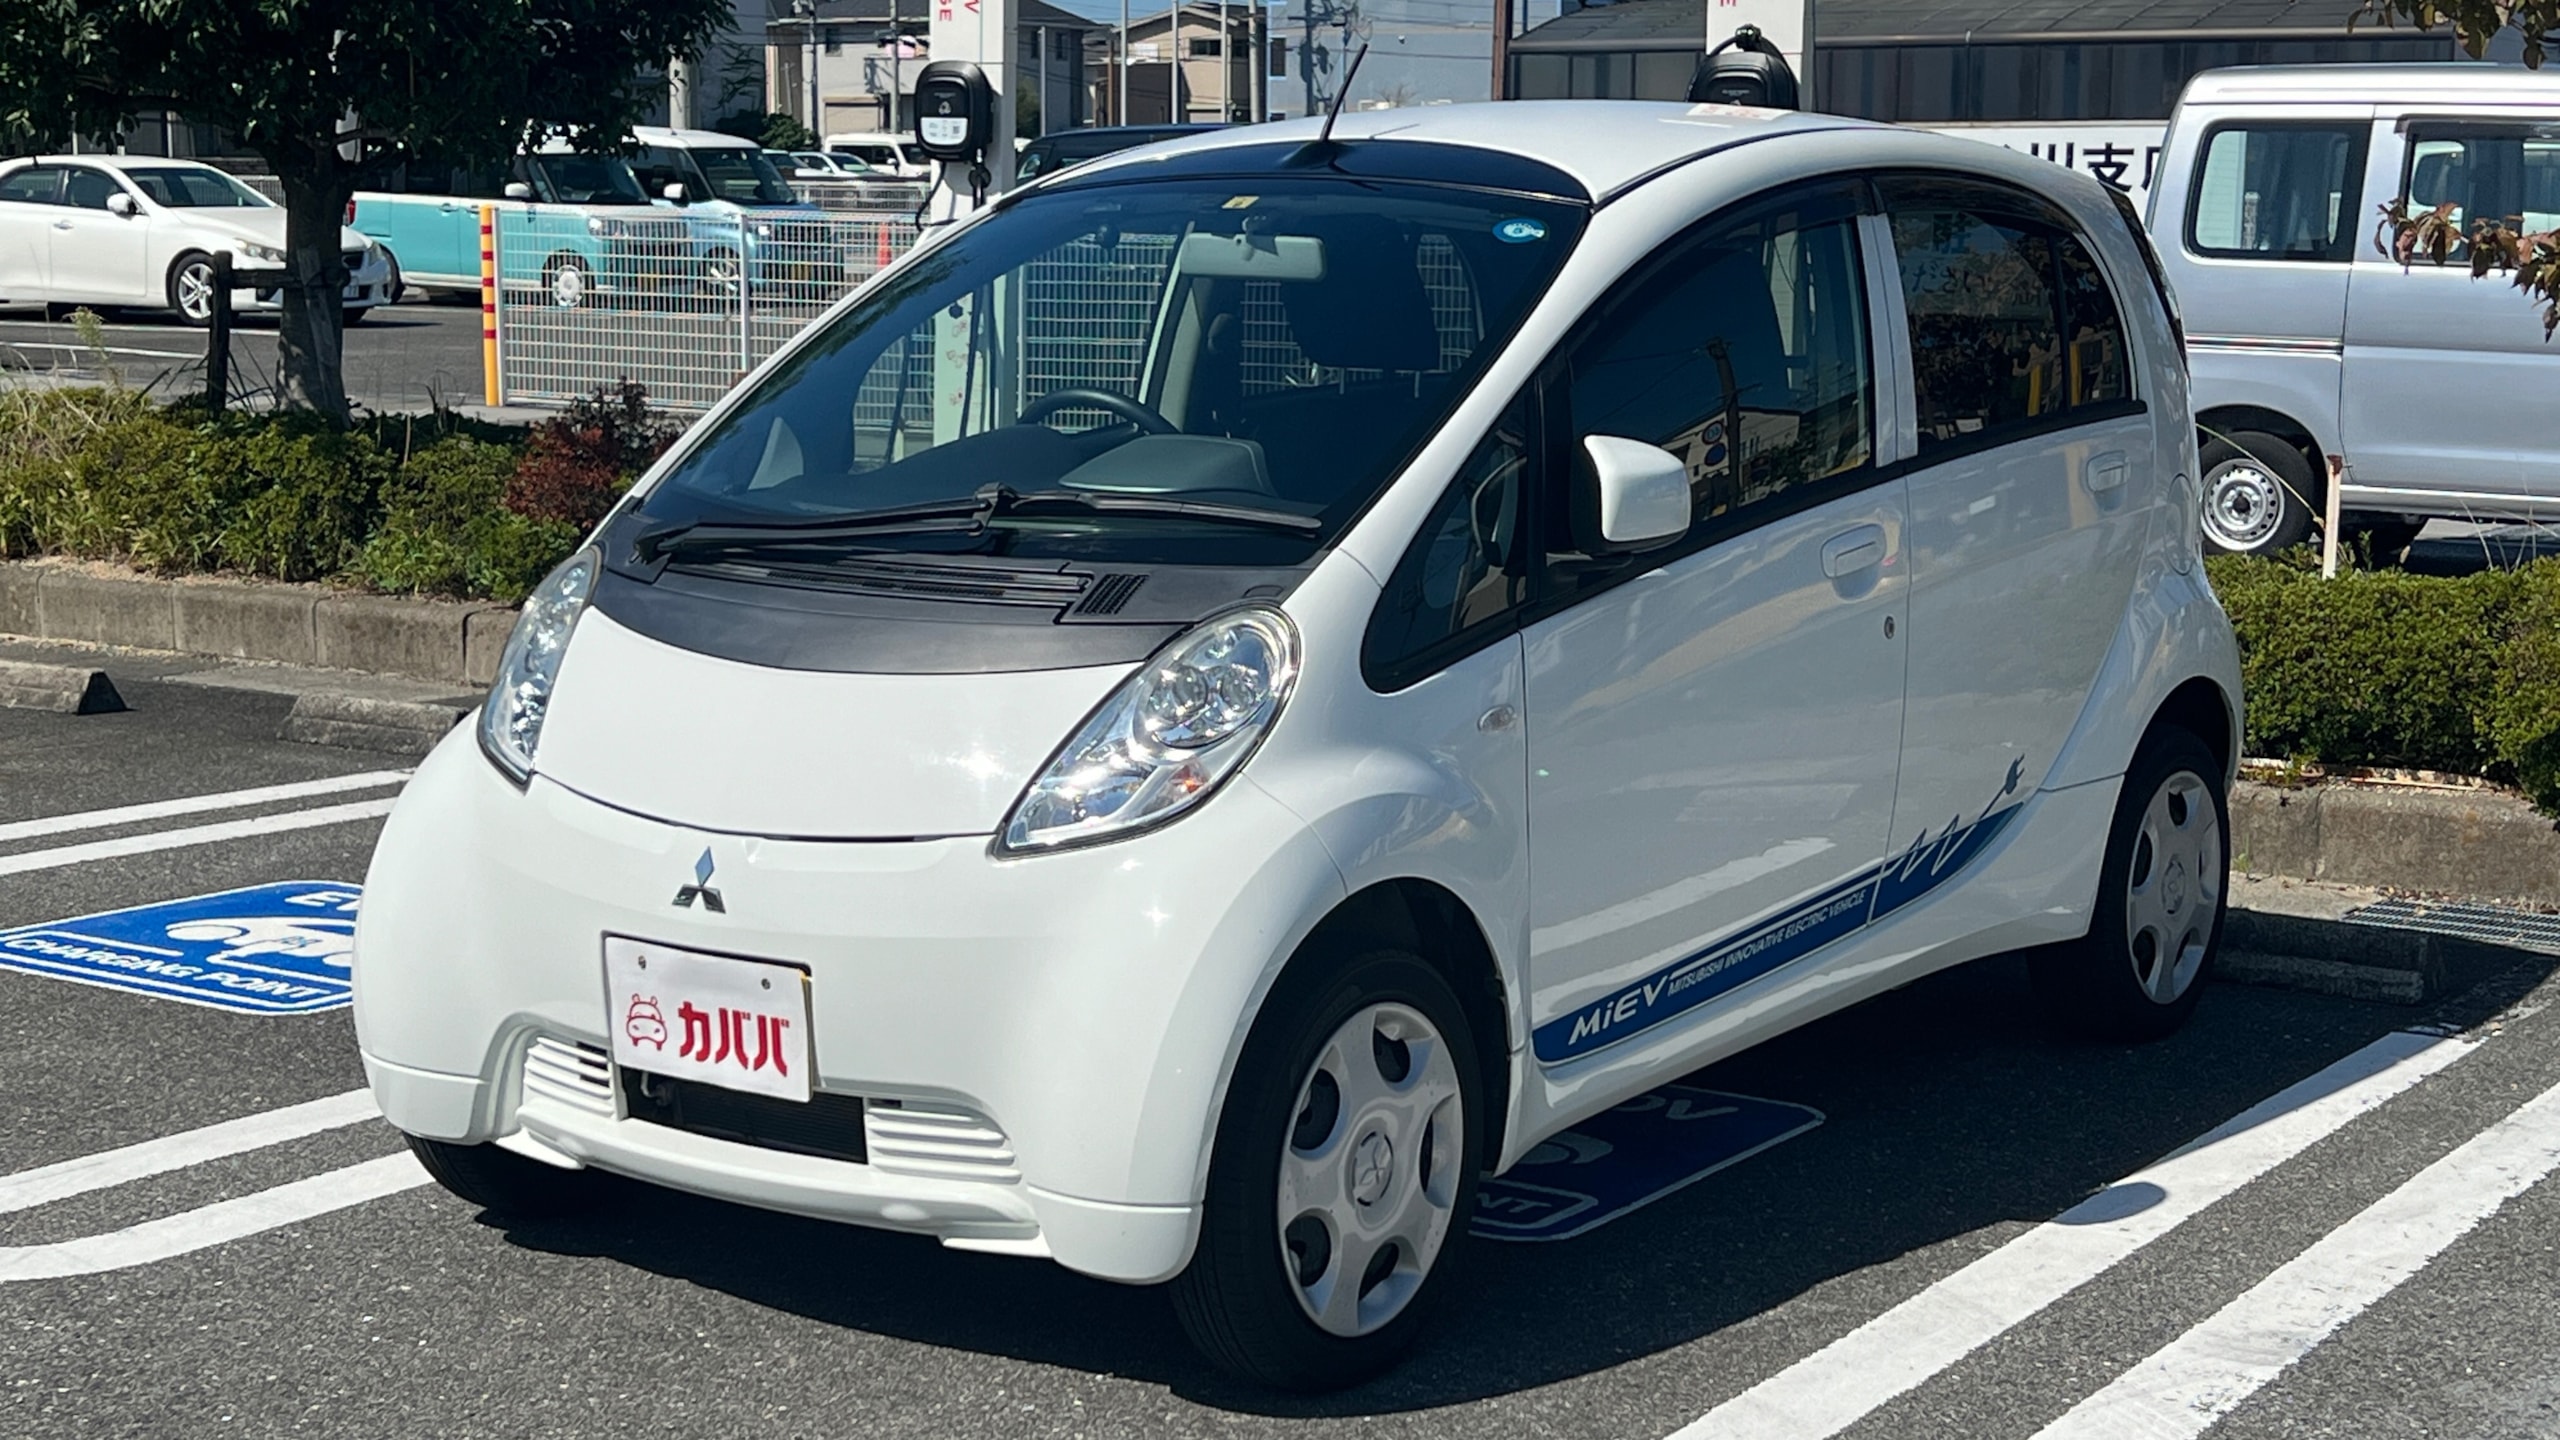 アイミーブ X(三菱)2014年式 20万円の中古車 - 自動車フリマ(車の個人売買)。カババ